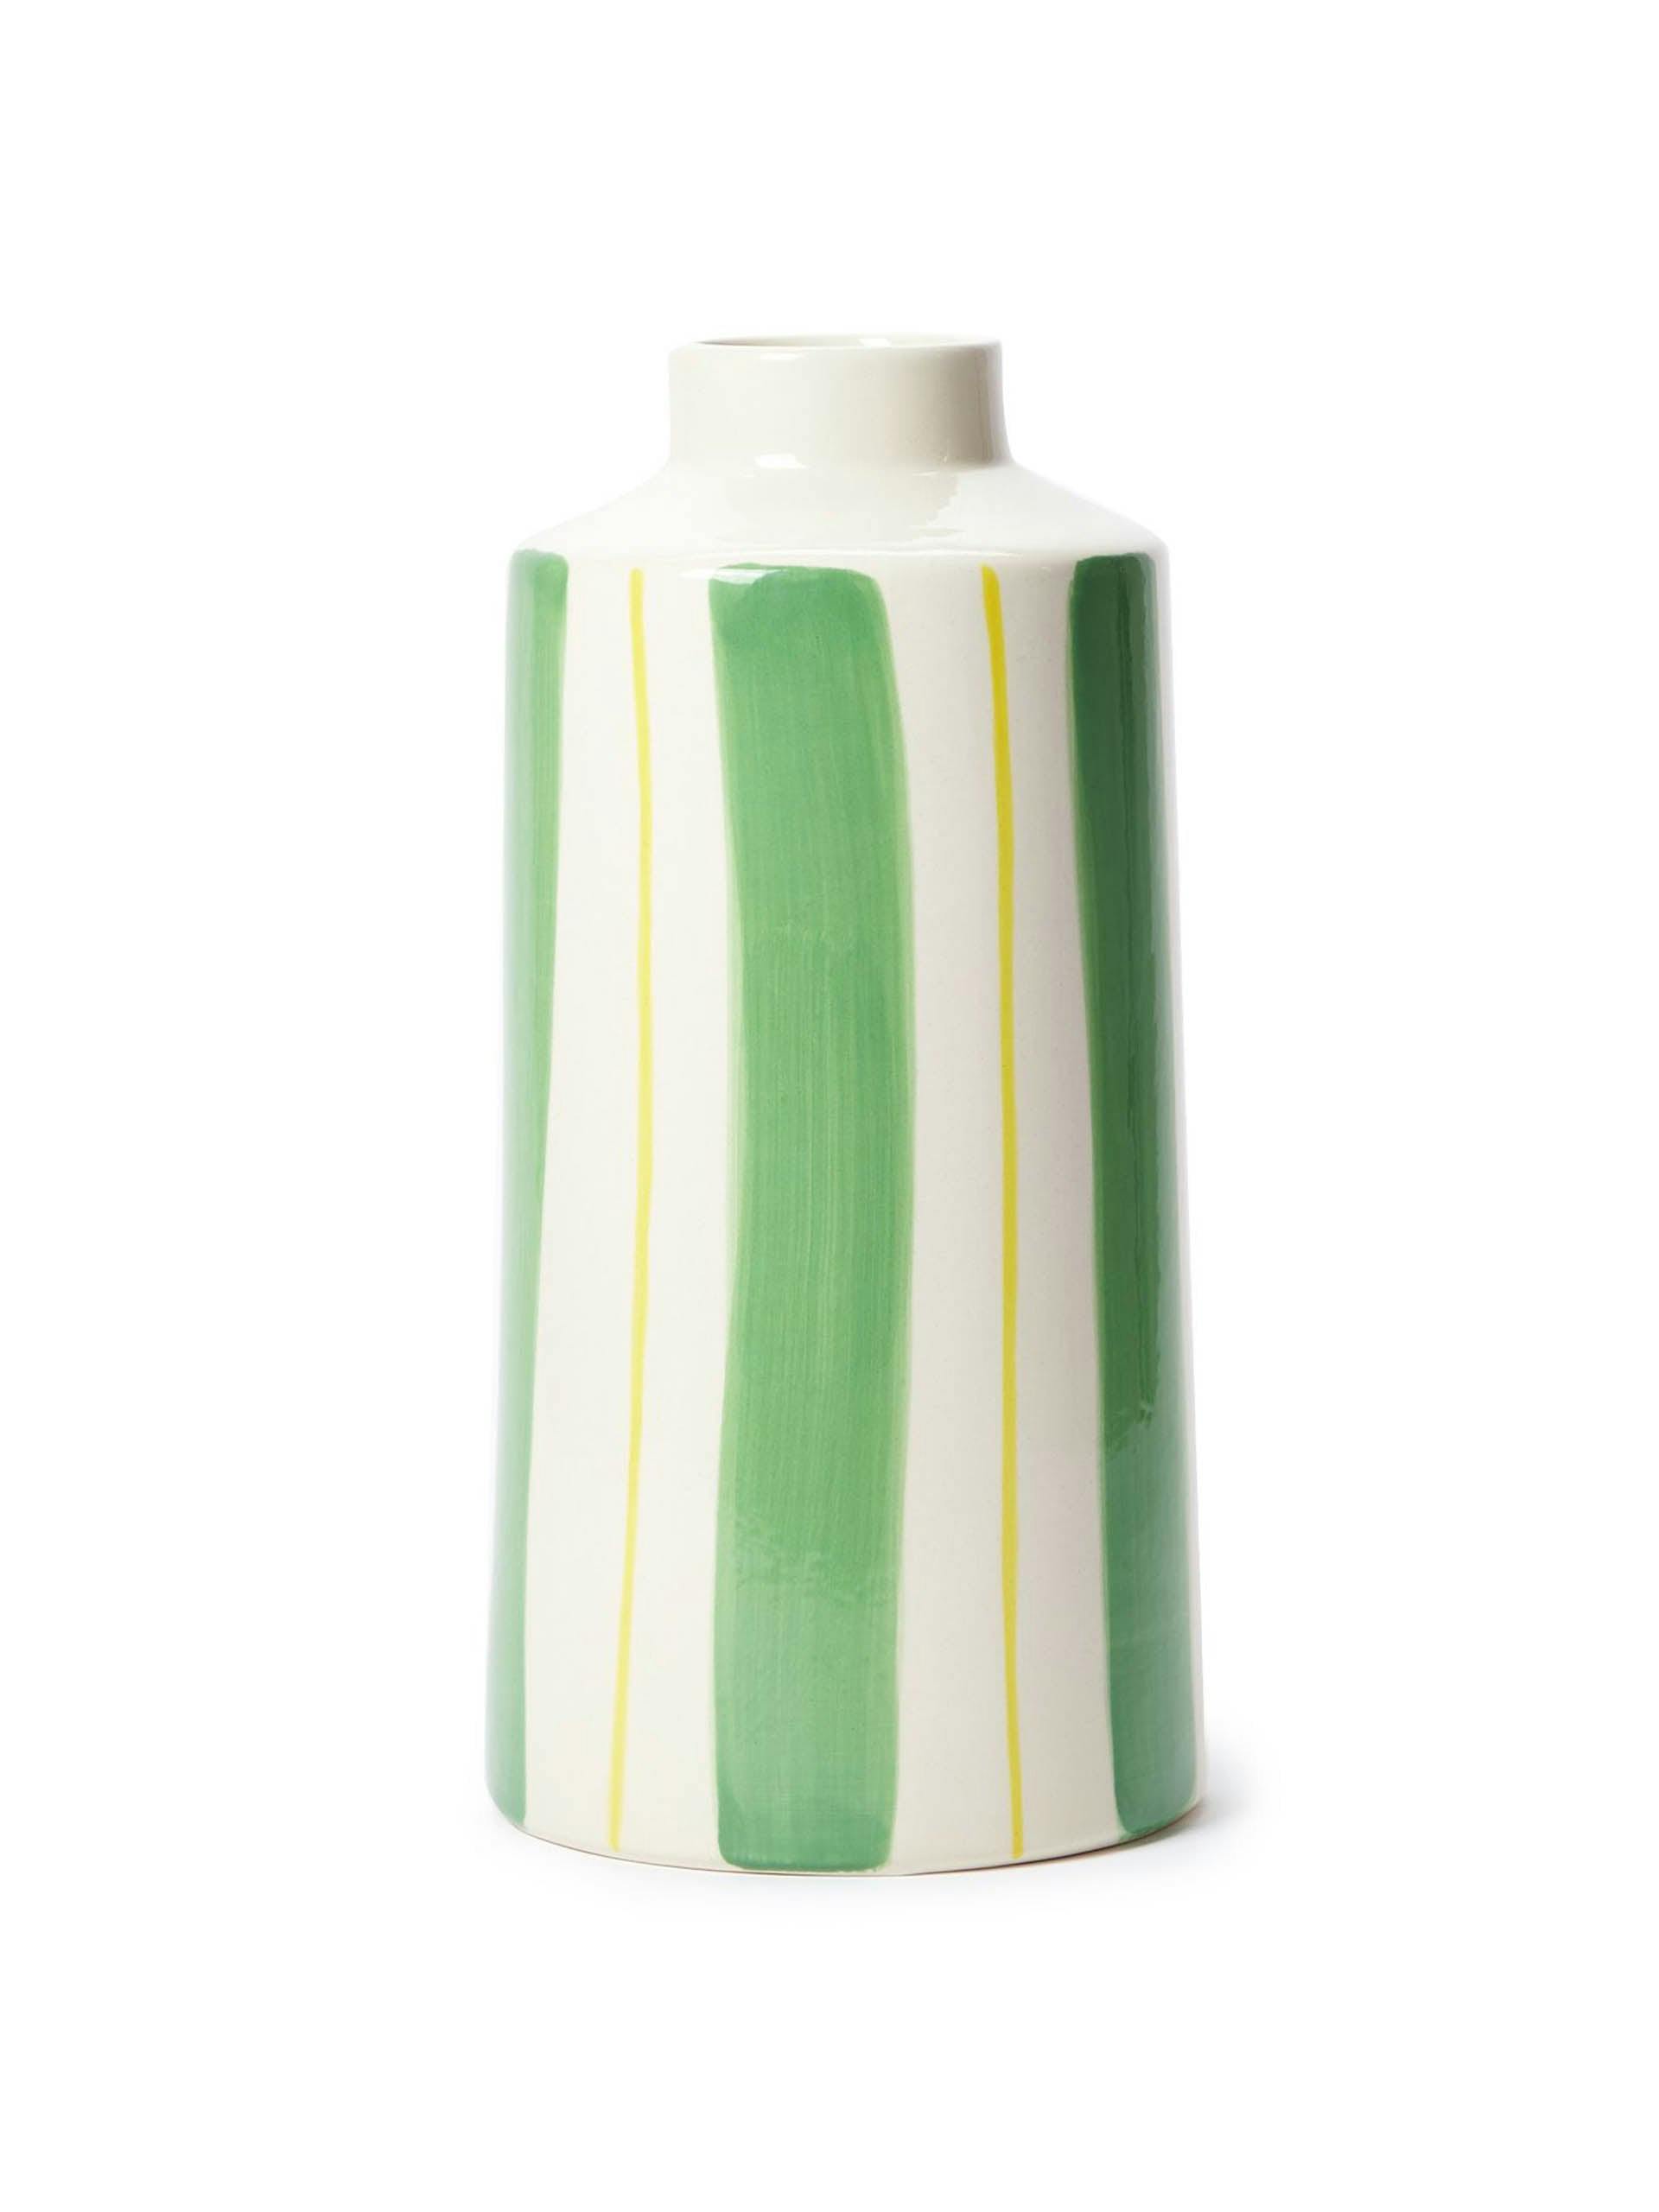 Small stripe vase in green